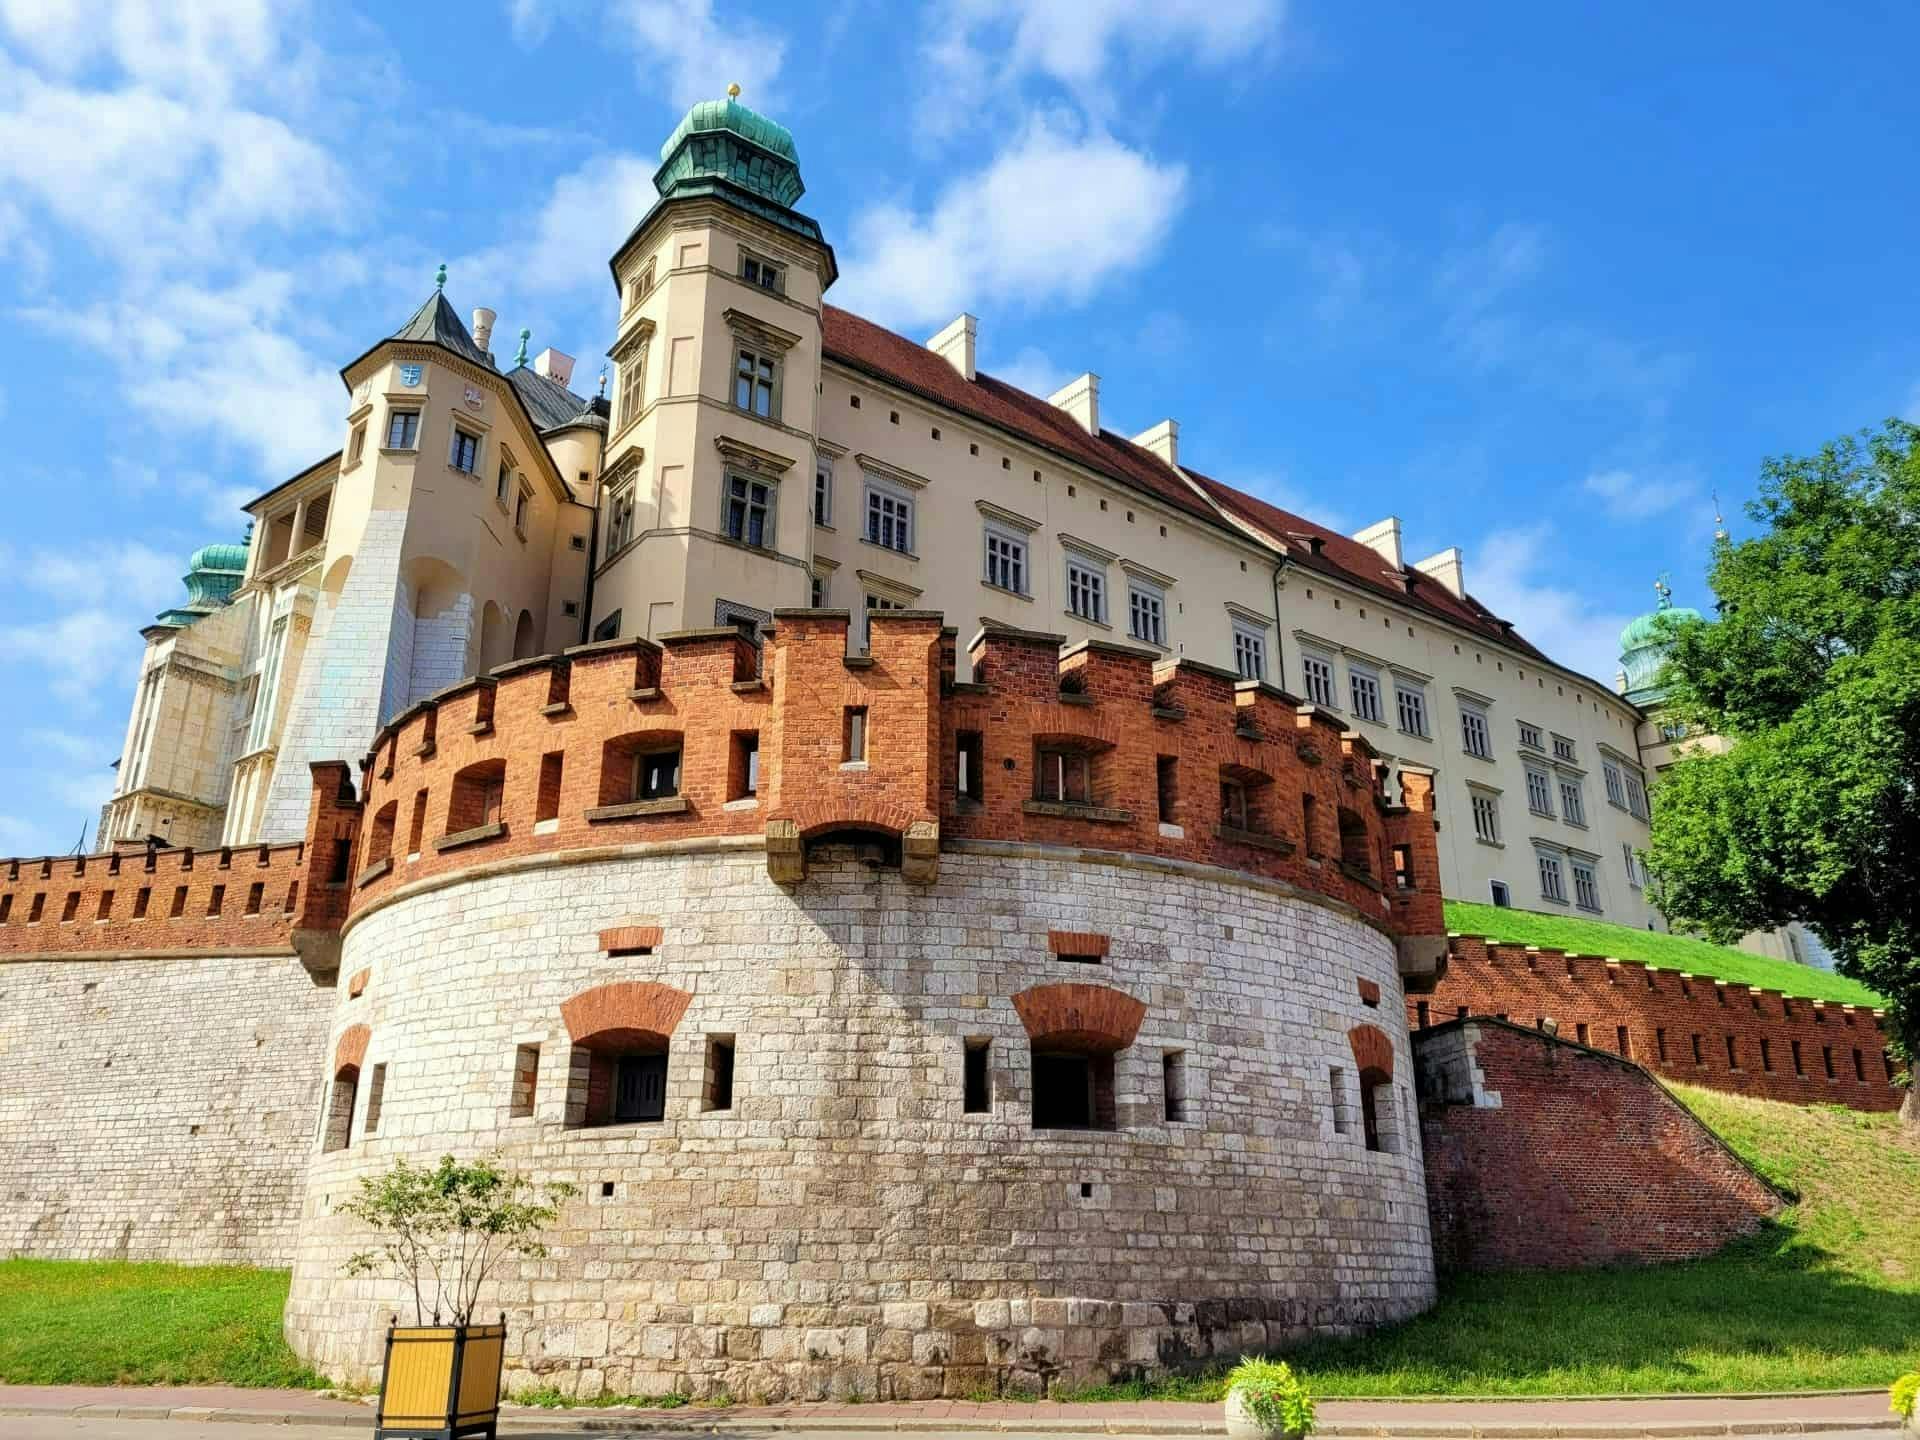 Visite guidée espagnole des points forts du Wawel